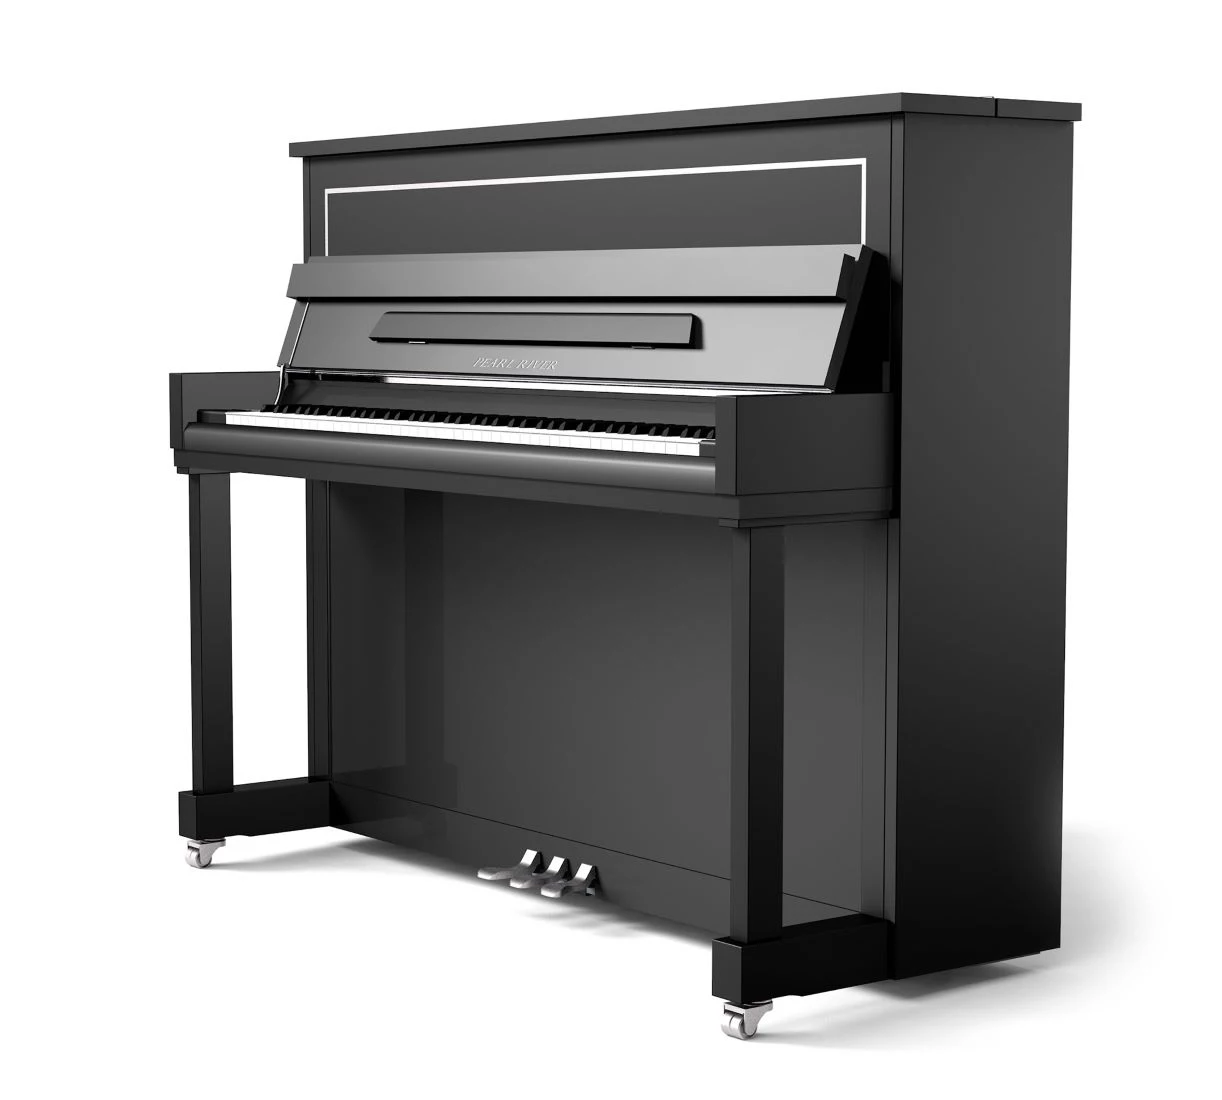 Акустическое пианино Pearl River QU1-PH1 BK